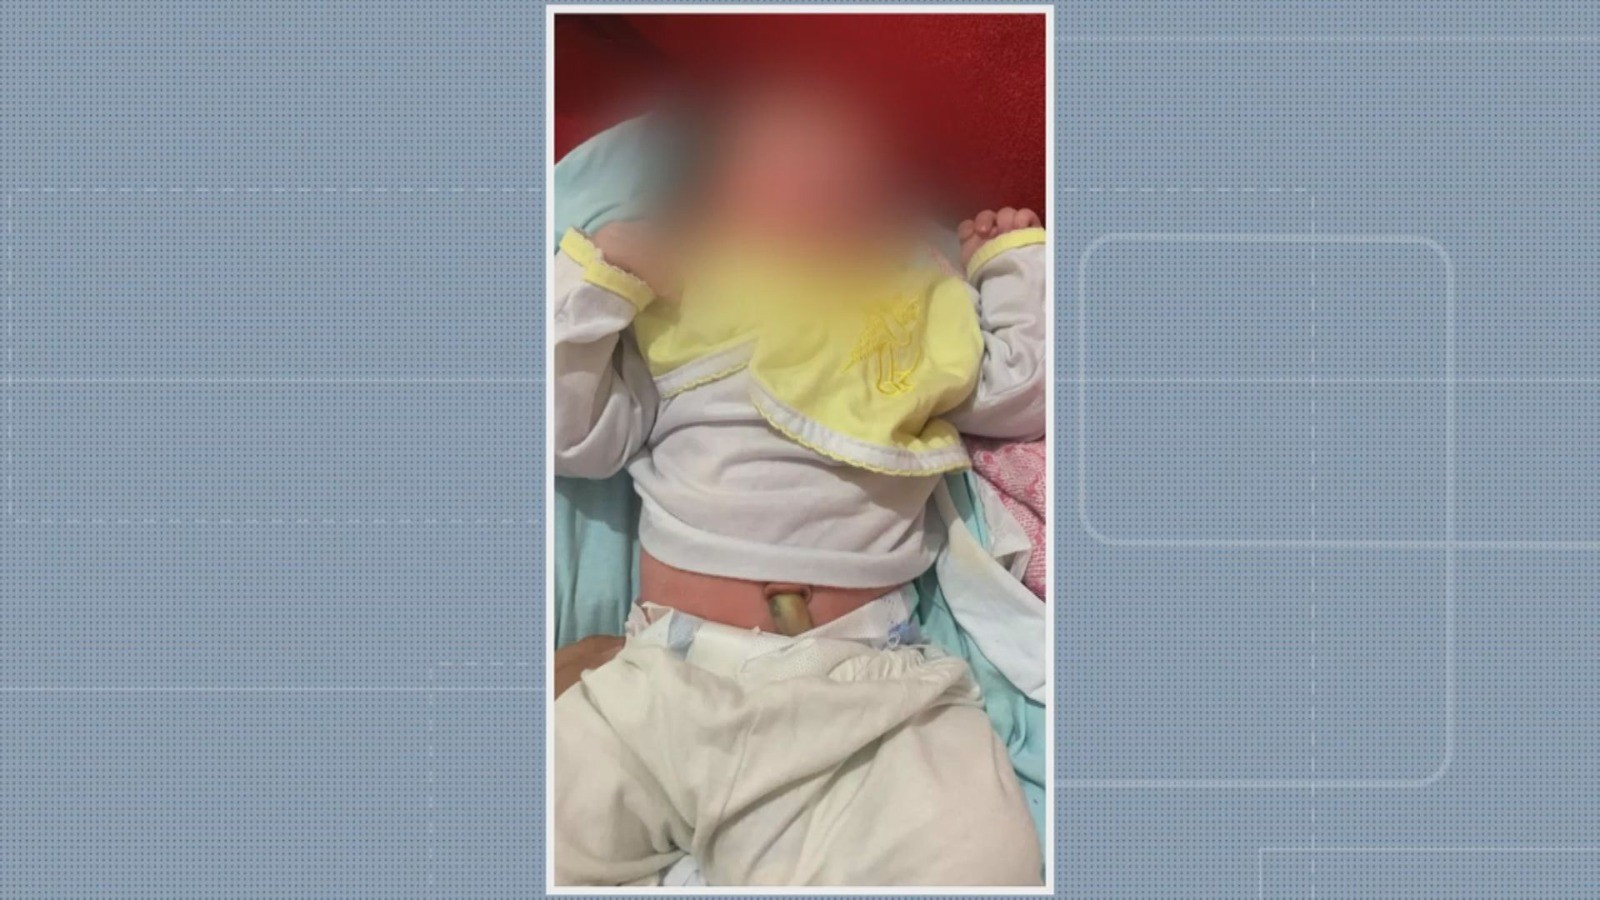 Bebê encontrado em saco plástico na Bahia recebe alta hospitalar e é levado para casa de acolhimento